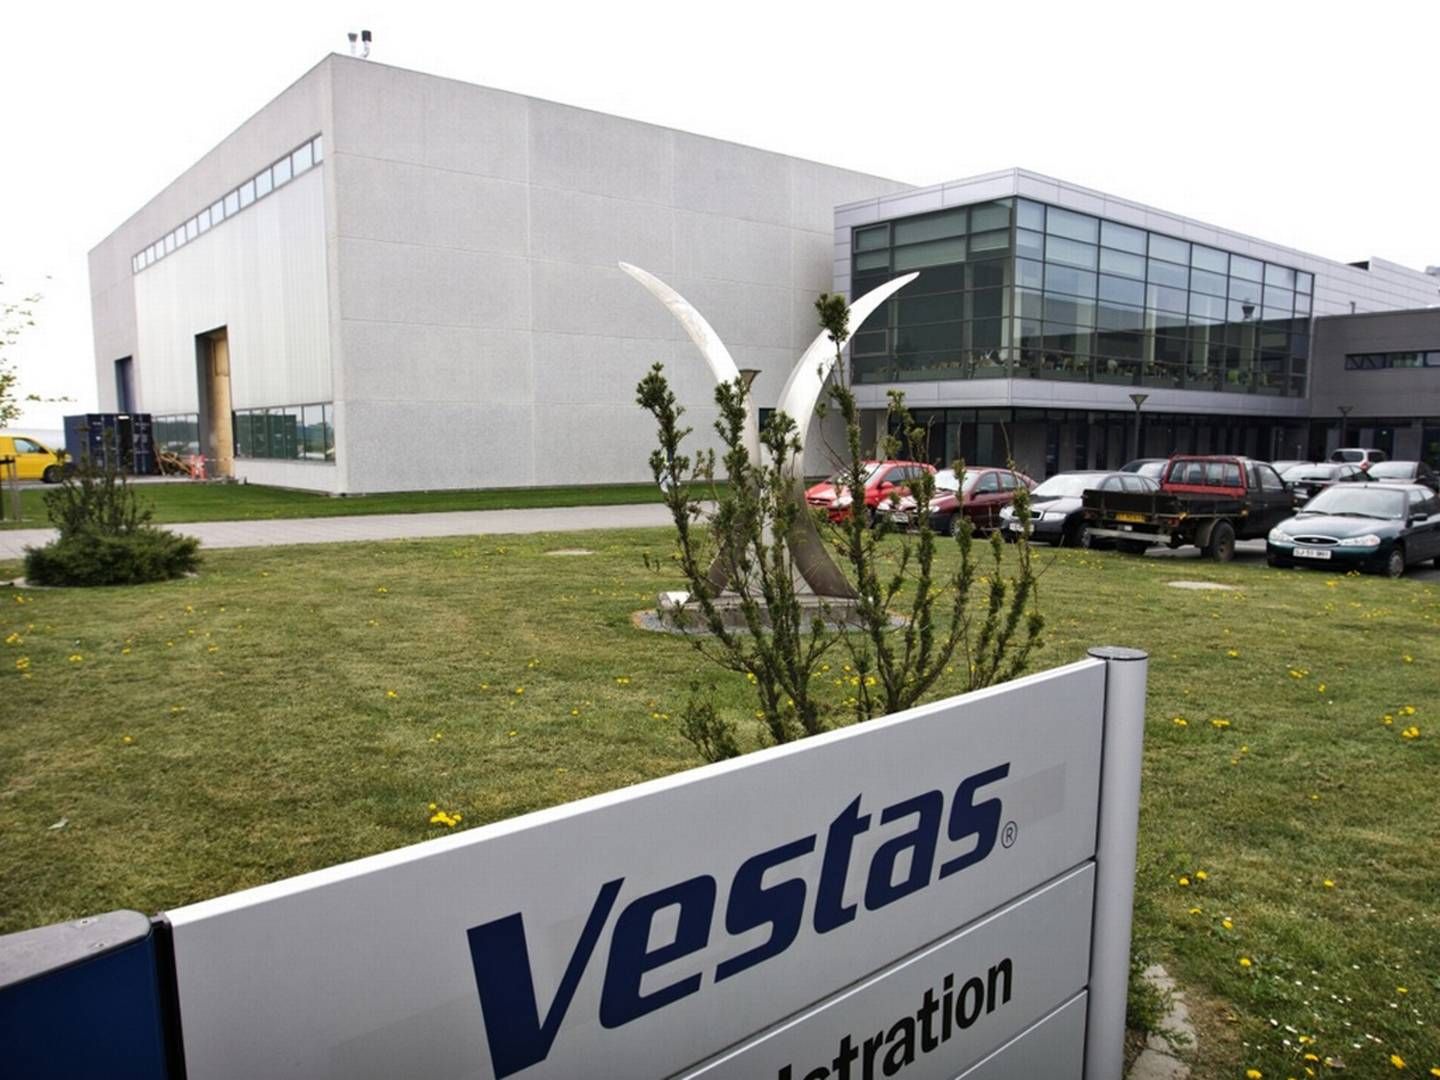 Vestas anklager i en retssag kæmpekonkurrenten General Electric for at skjule information over for patentmyndighederne. En strategi, advokater betegner som "Atombombe"-forsvaret. | Foto: Polfoto